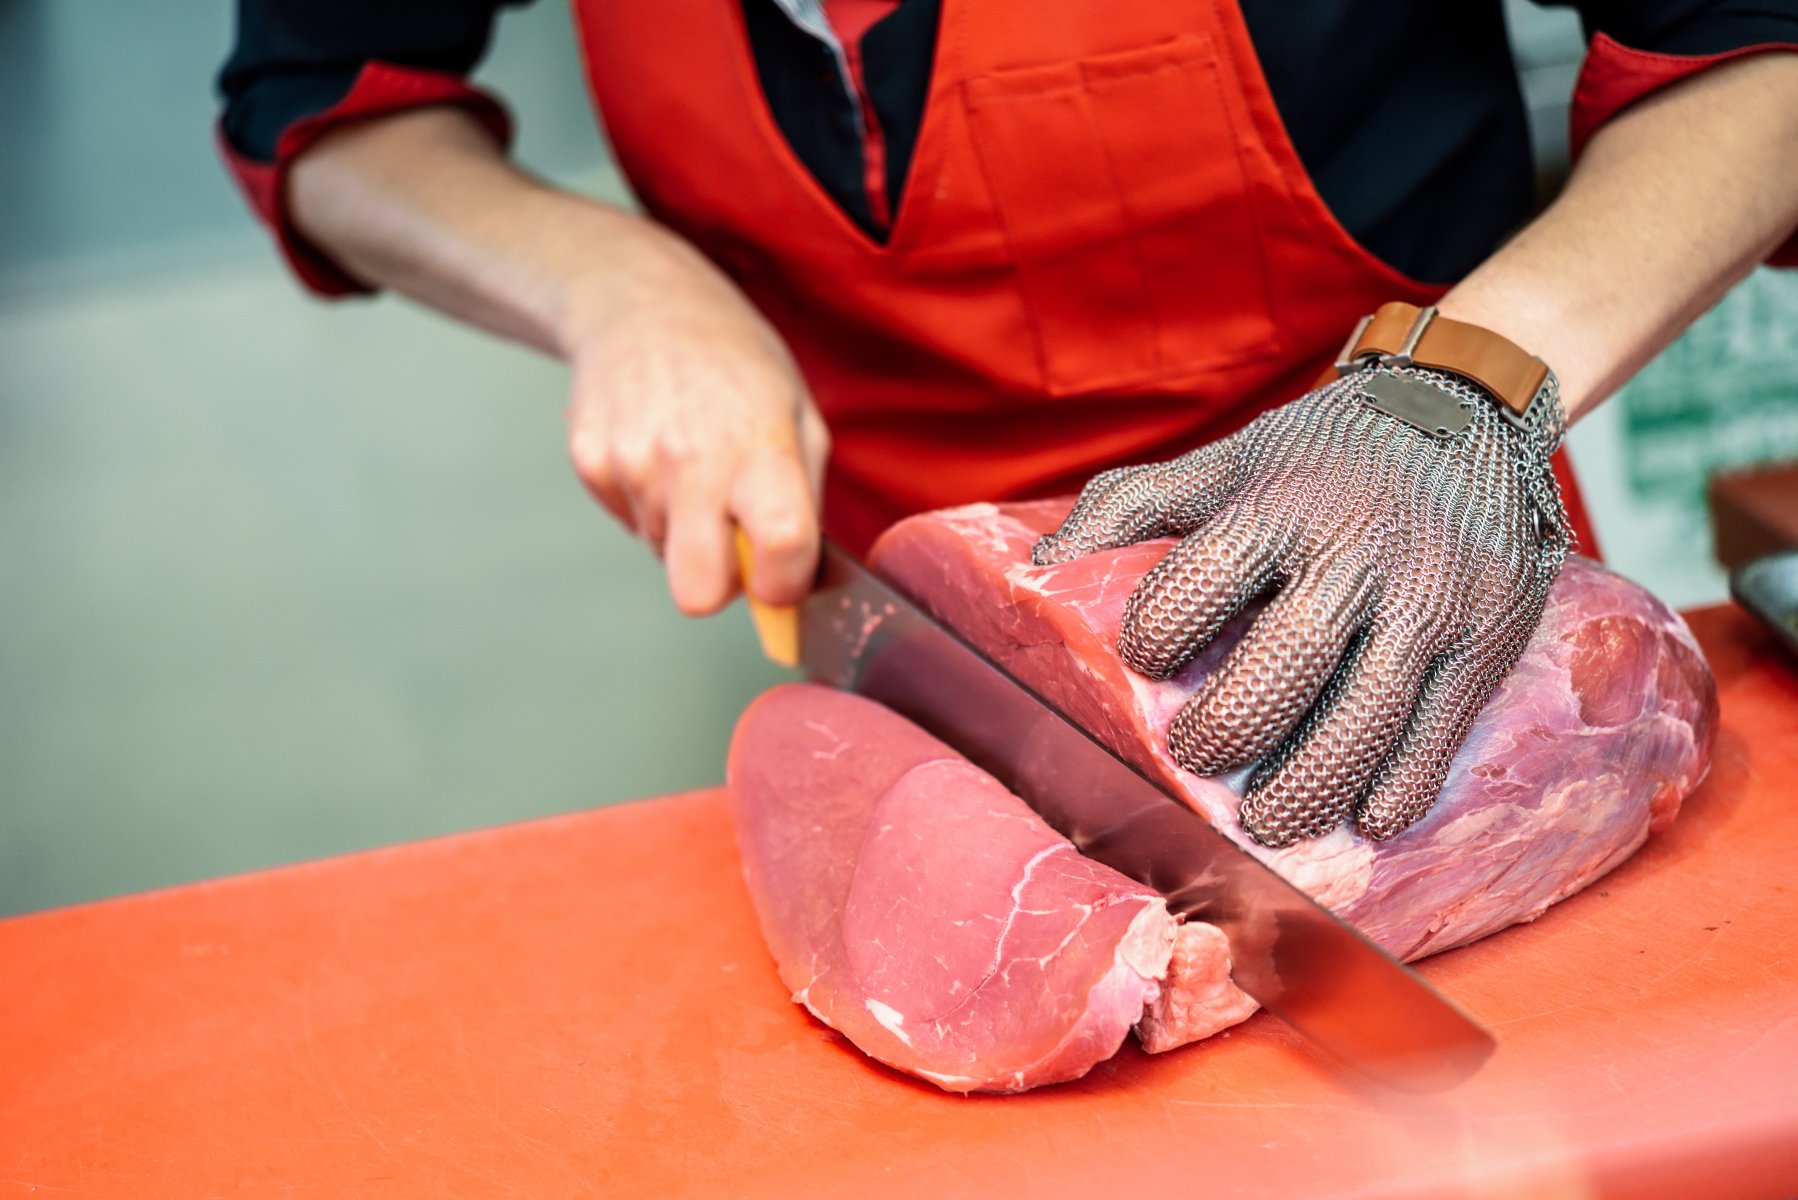 Мясокомбинат в Туле переделывал мясо в котлеты для искусственного увеличения срока годности 